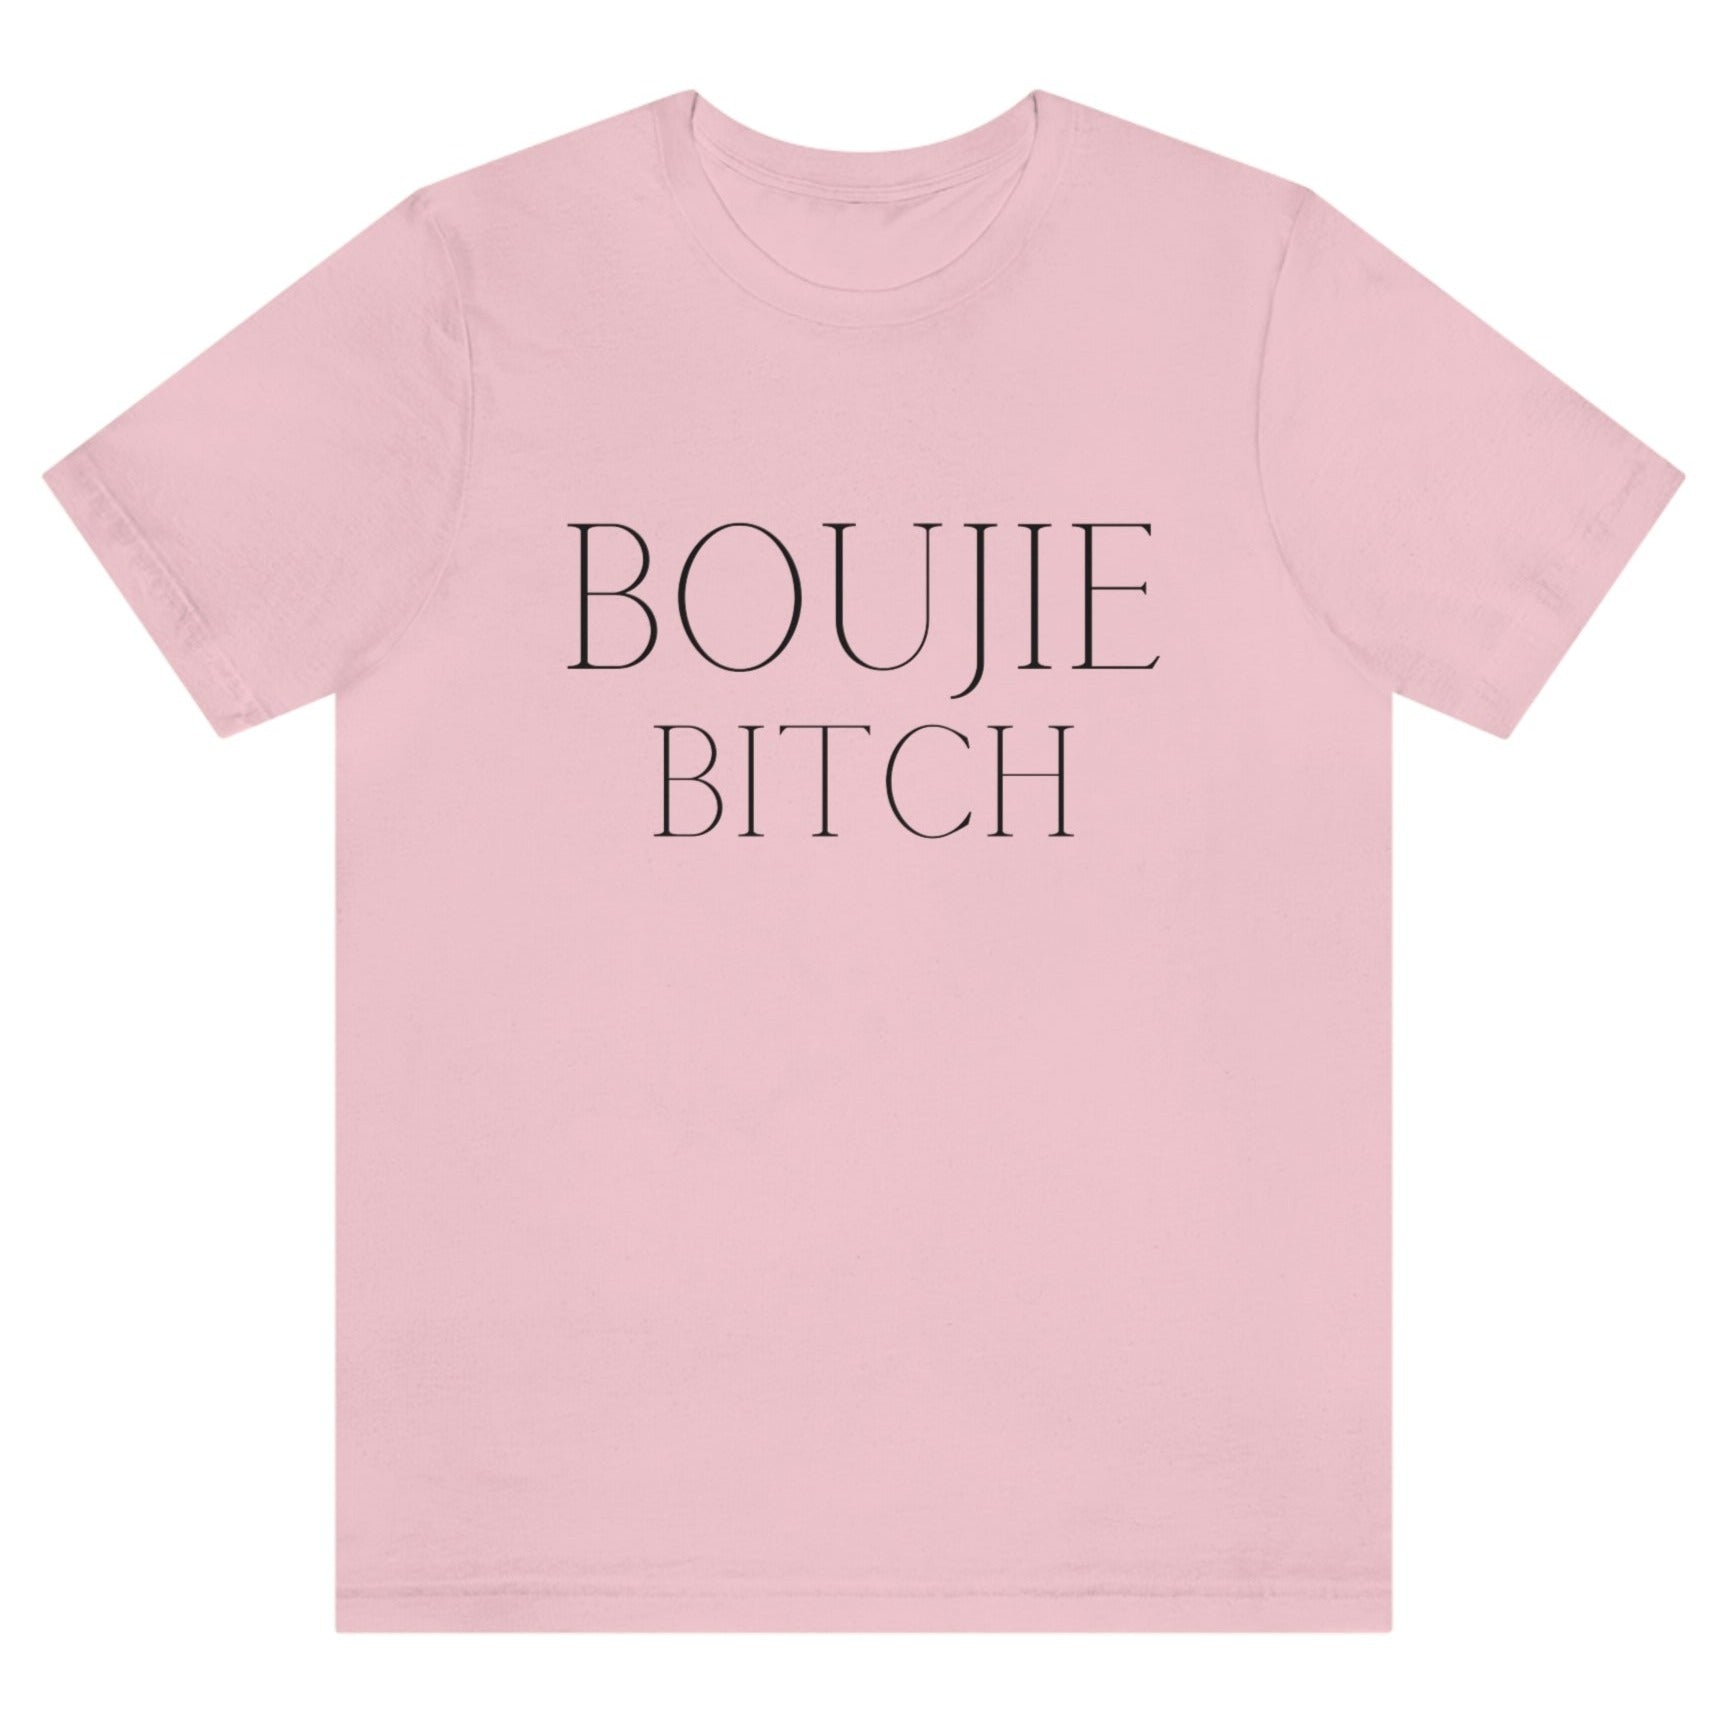 boujie-bitch-bourgeois-pink-t-shirt-womens